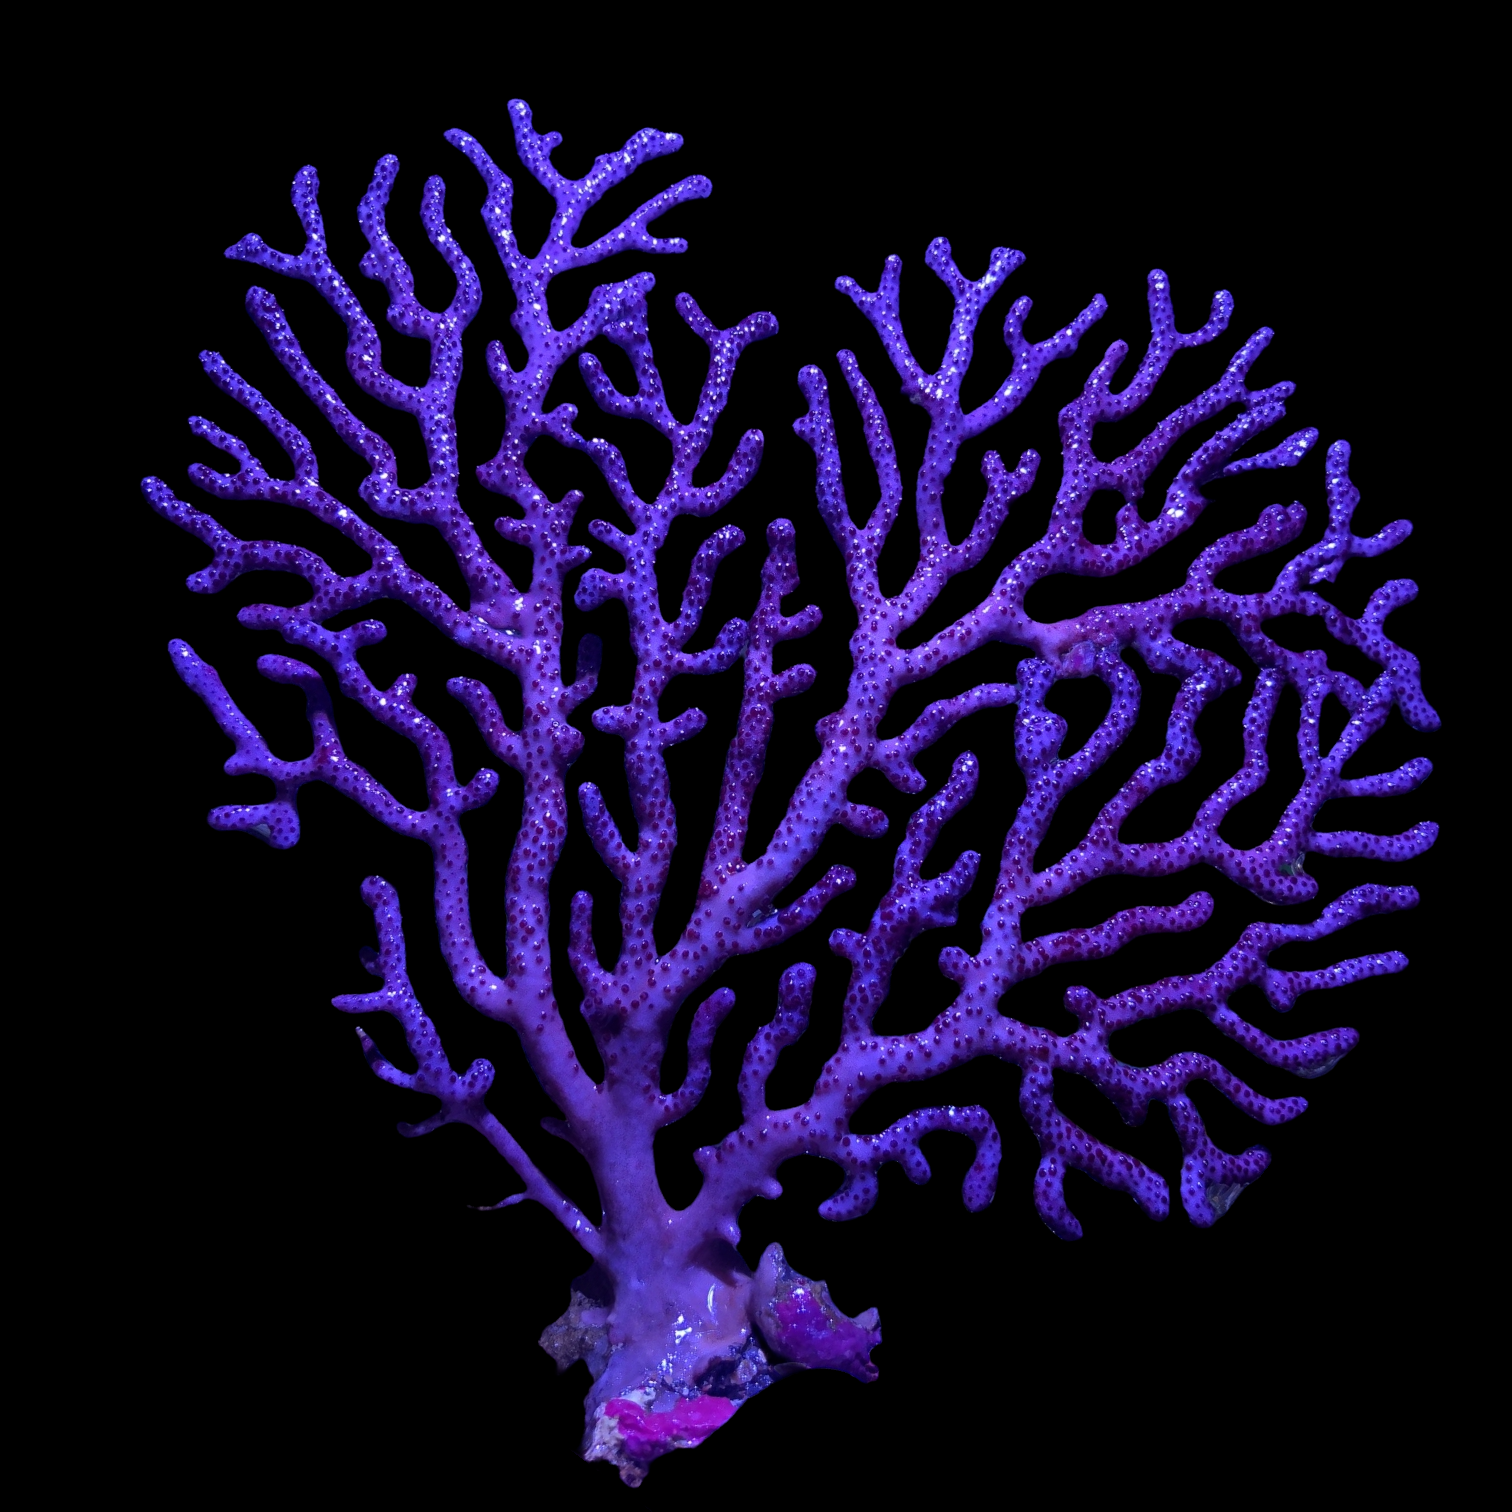 Purple Anthogorgia Gorgonian